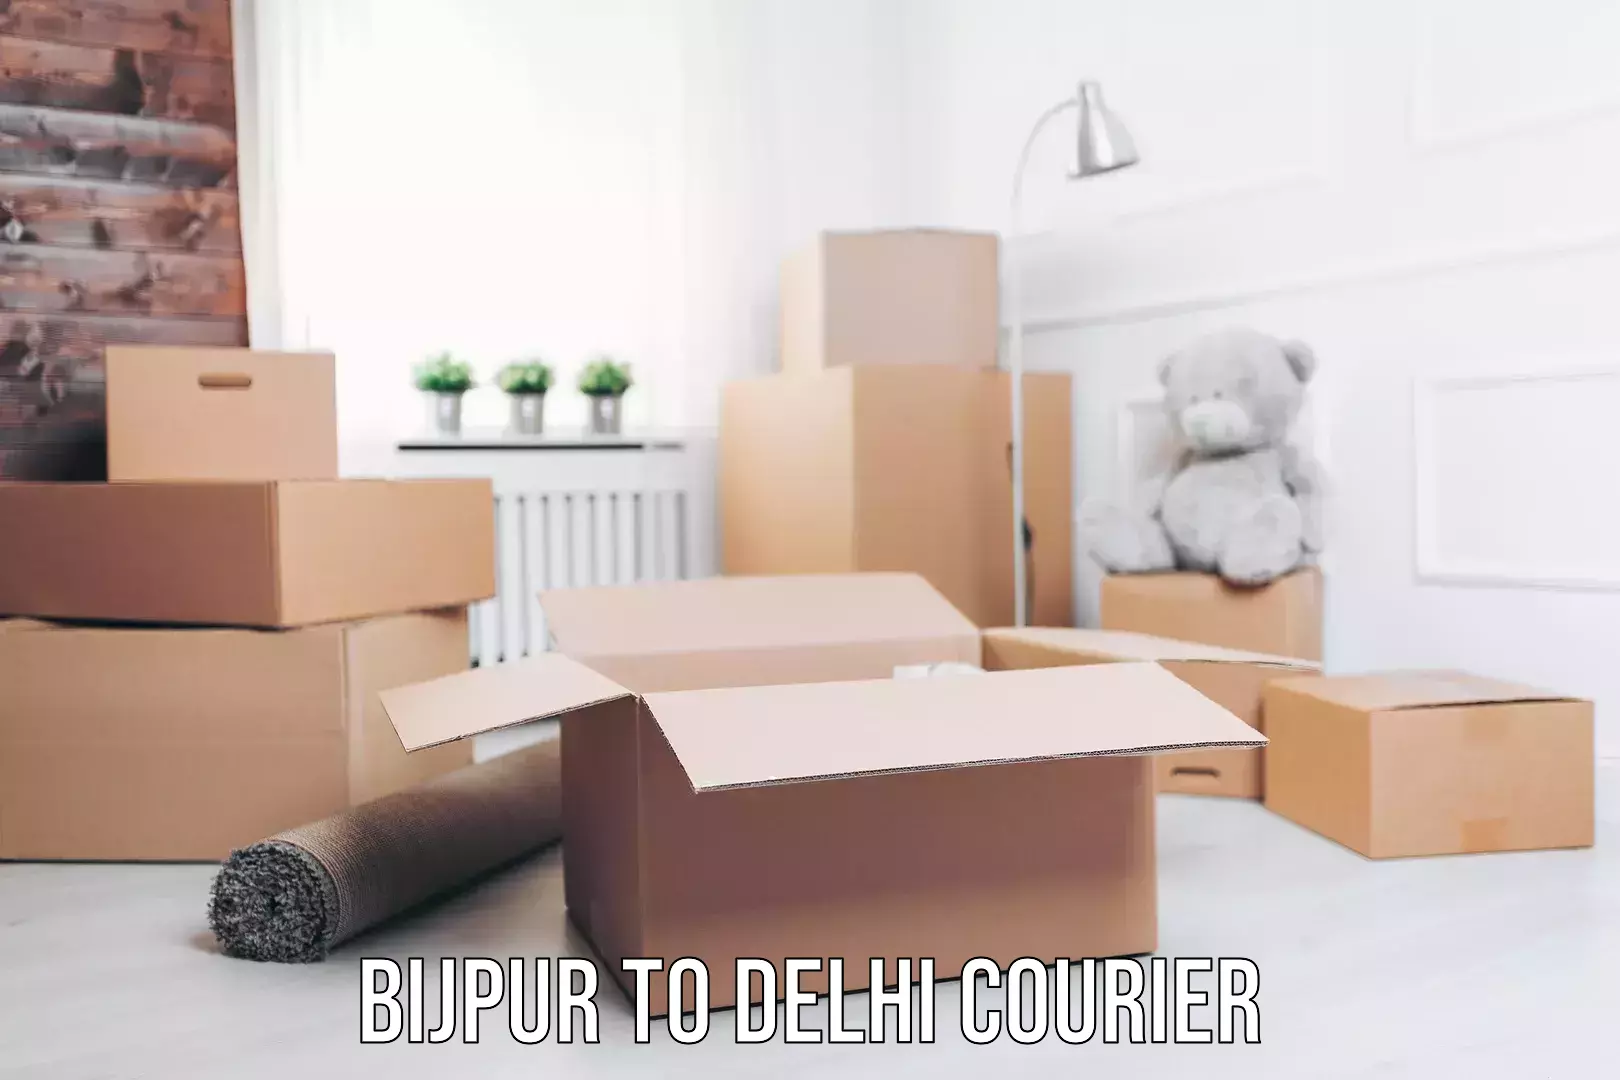 Courier service booking Bijpur to Delhi